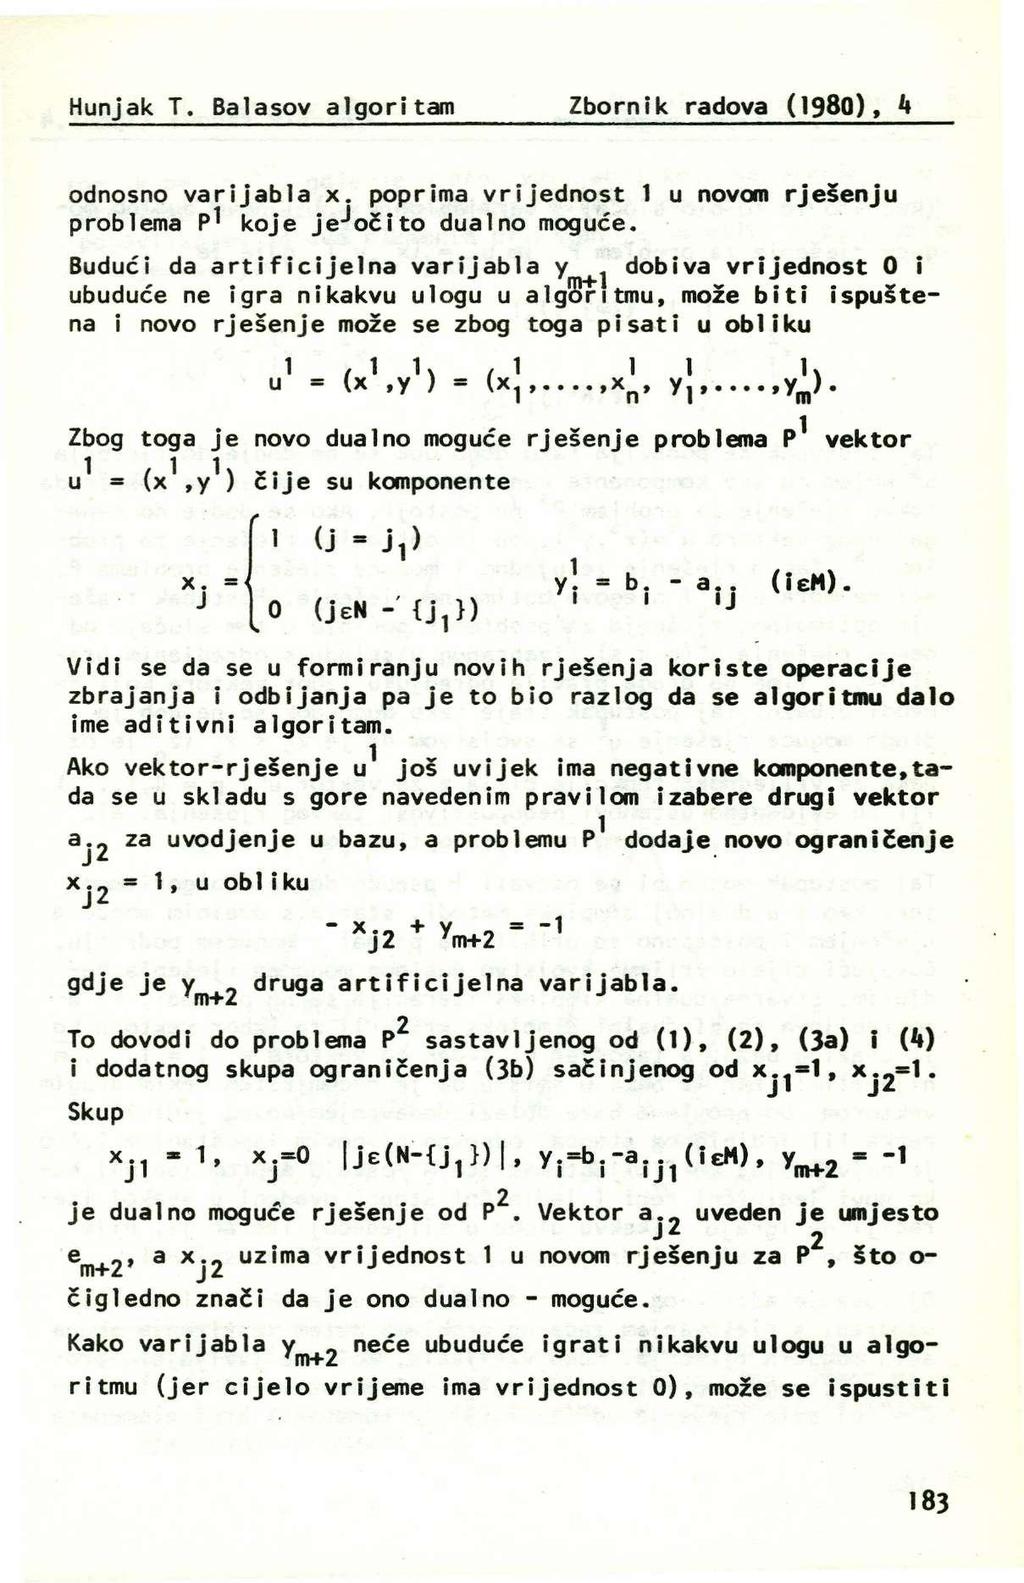 Hunjak T. Balaov algoritam Zbornik radova (198), k odnono varijabla x. poprima vrijednot 1 u novom rješenju problema P* koje je^očito dual no moguće.